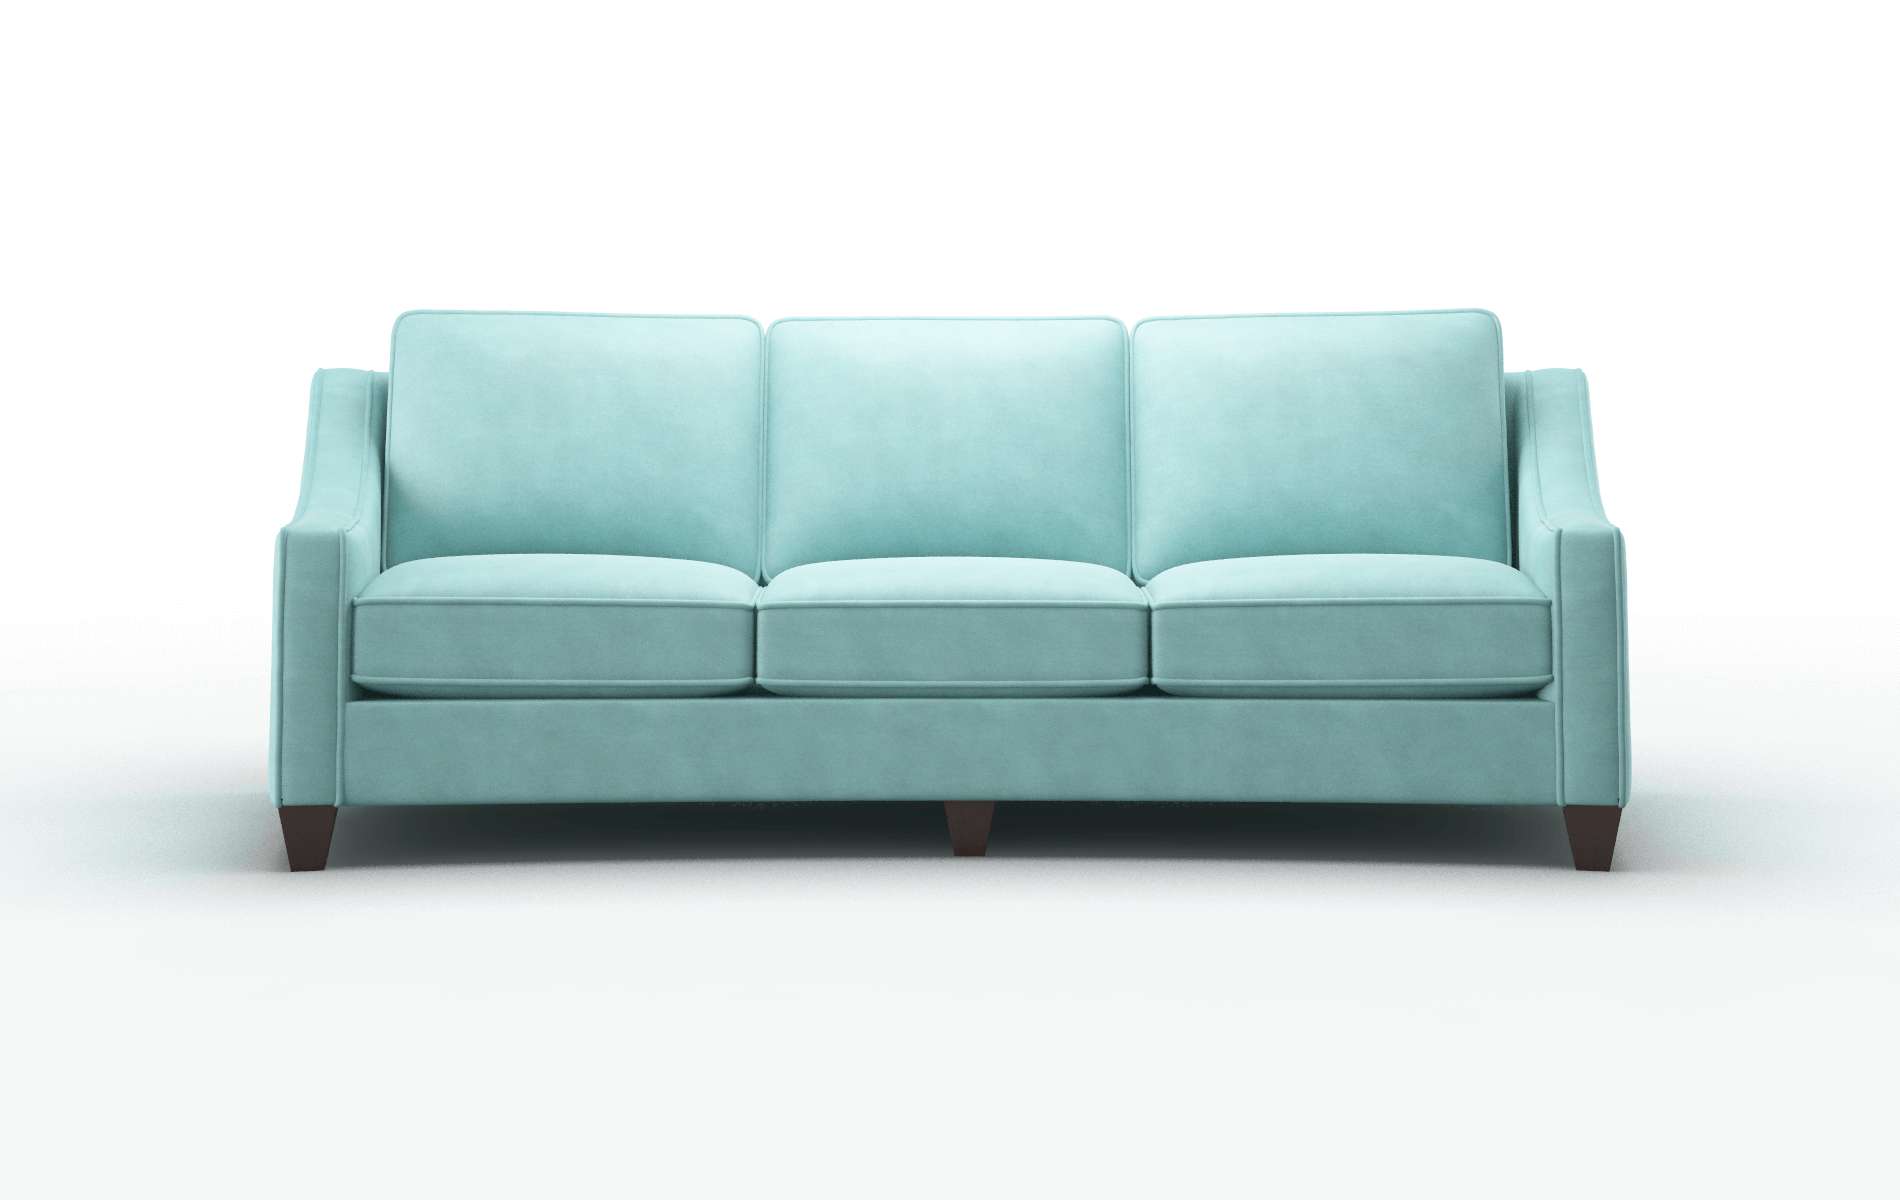 Sanda Curious Turquoise Sofa espresso legs 1